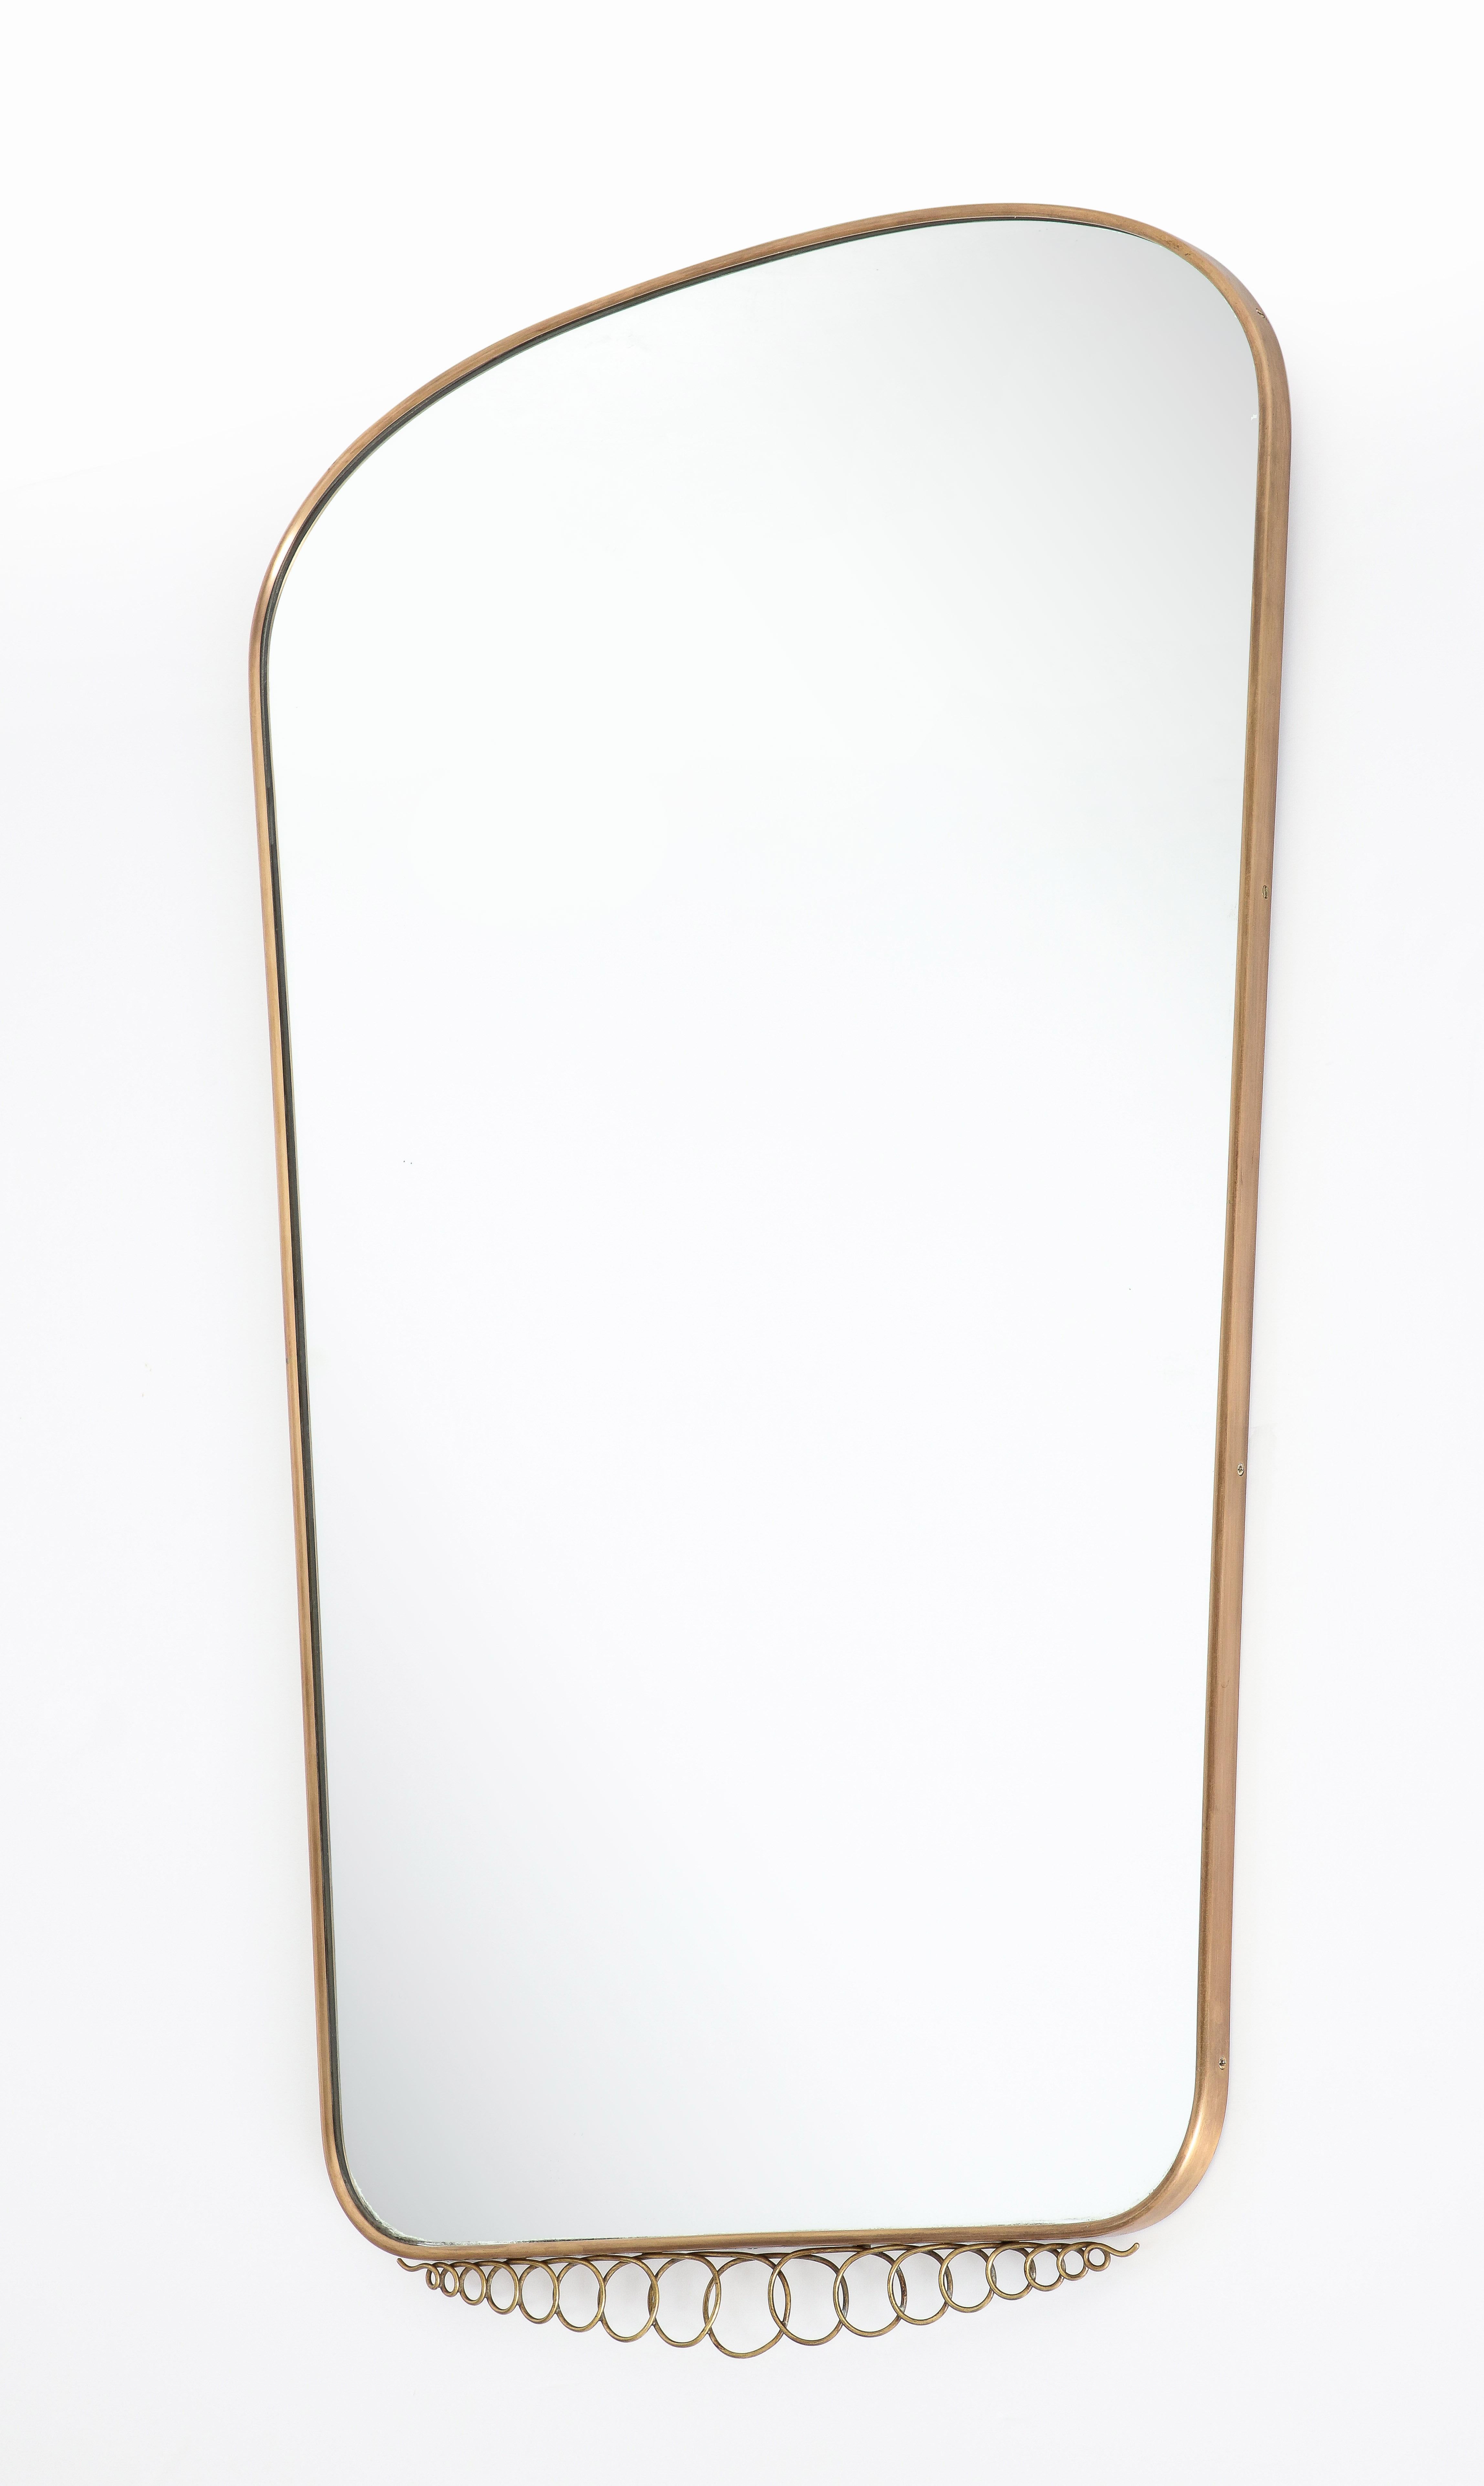 Miroir mural moderniste italien des années 1950 en laiton de grande forme avec un sommet arqué qui se rétrécit vers le bas avec un joli élément décoratif en laiton attaché. Cet élégant miroir du milieu du siècle illustre dans cette monture